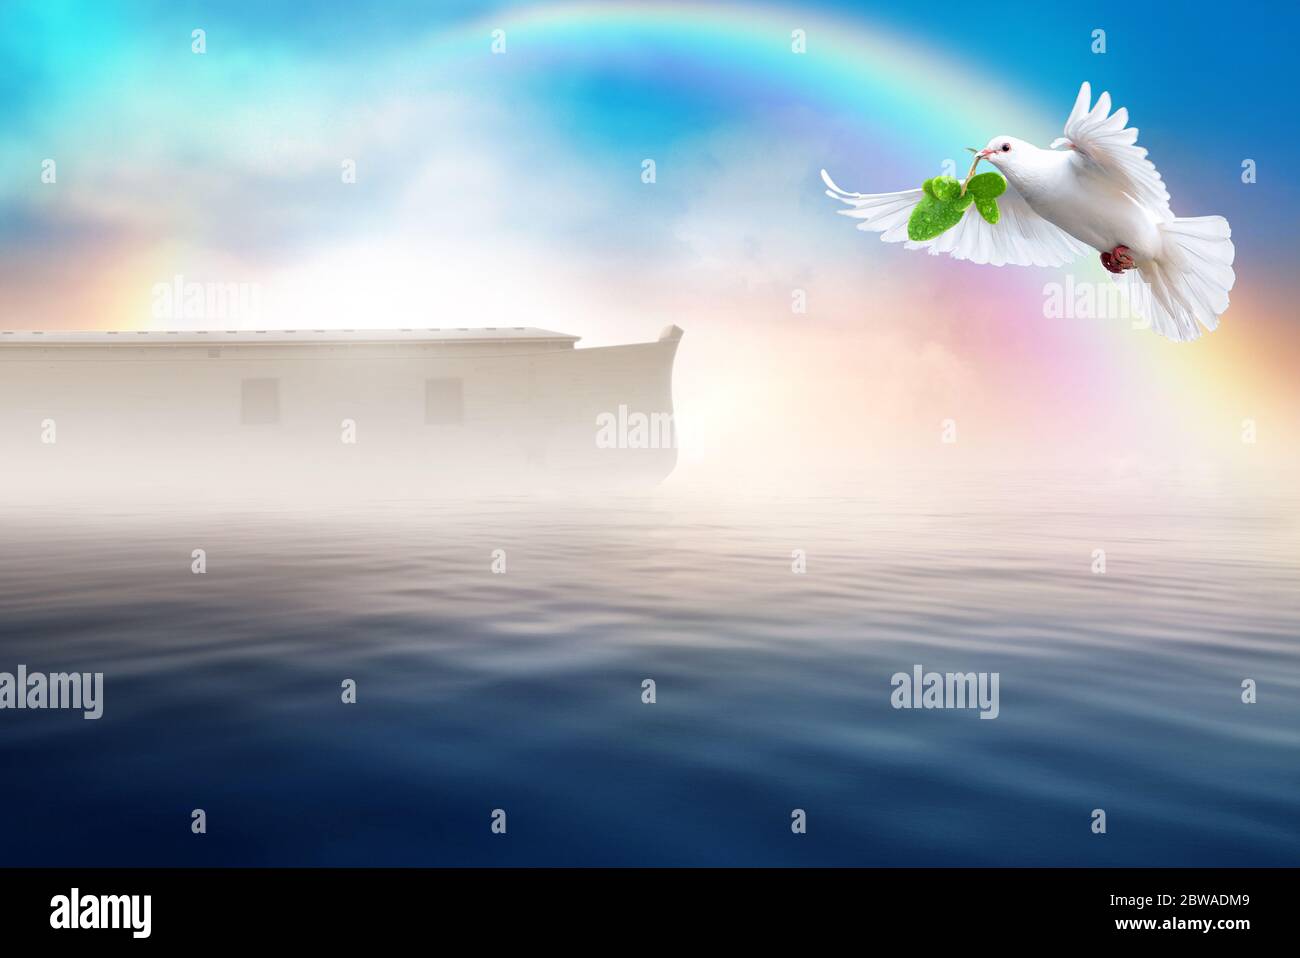 Colomba bianca che vola con foglia d'oliva nel suo becco. Concetto di tema della storia della bibbia dell'arca di Noè. Foto Stock